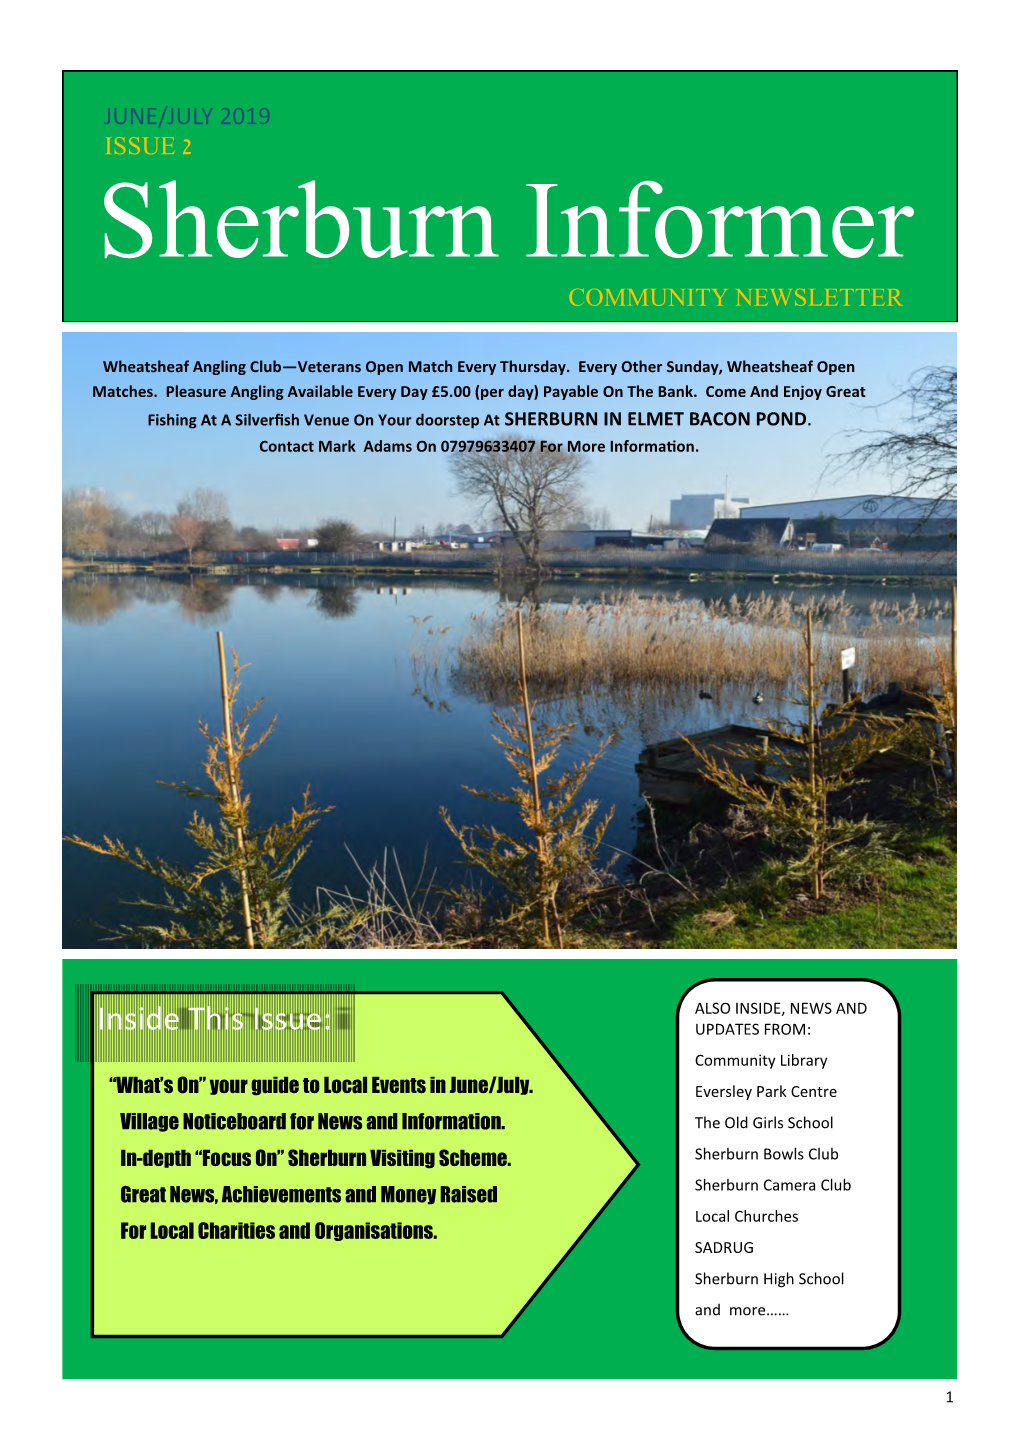 Sherburn Informer COMMUNITY NEWSLETTER